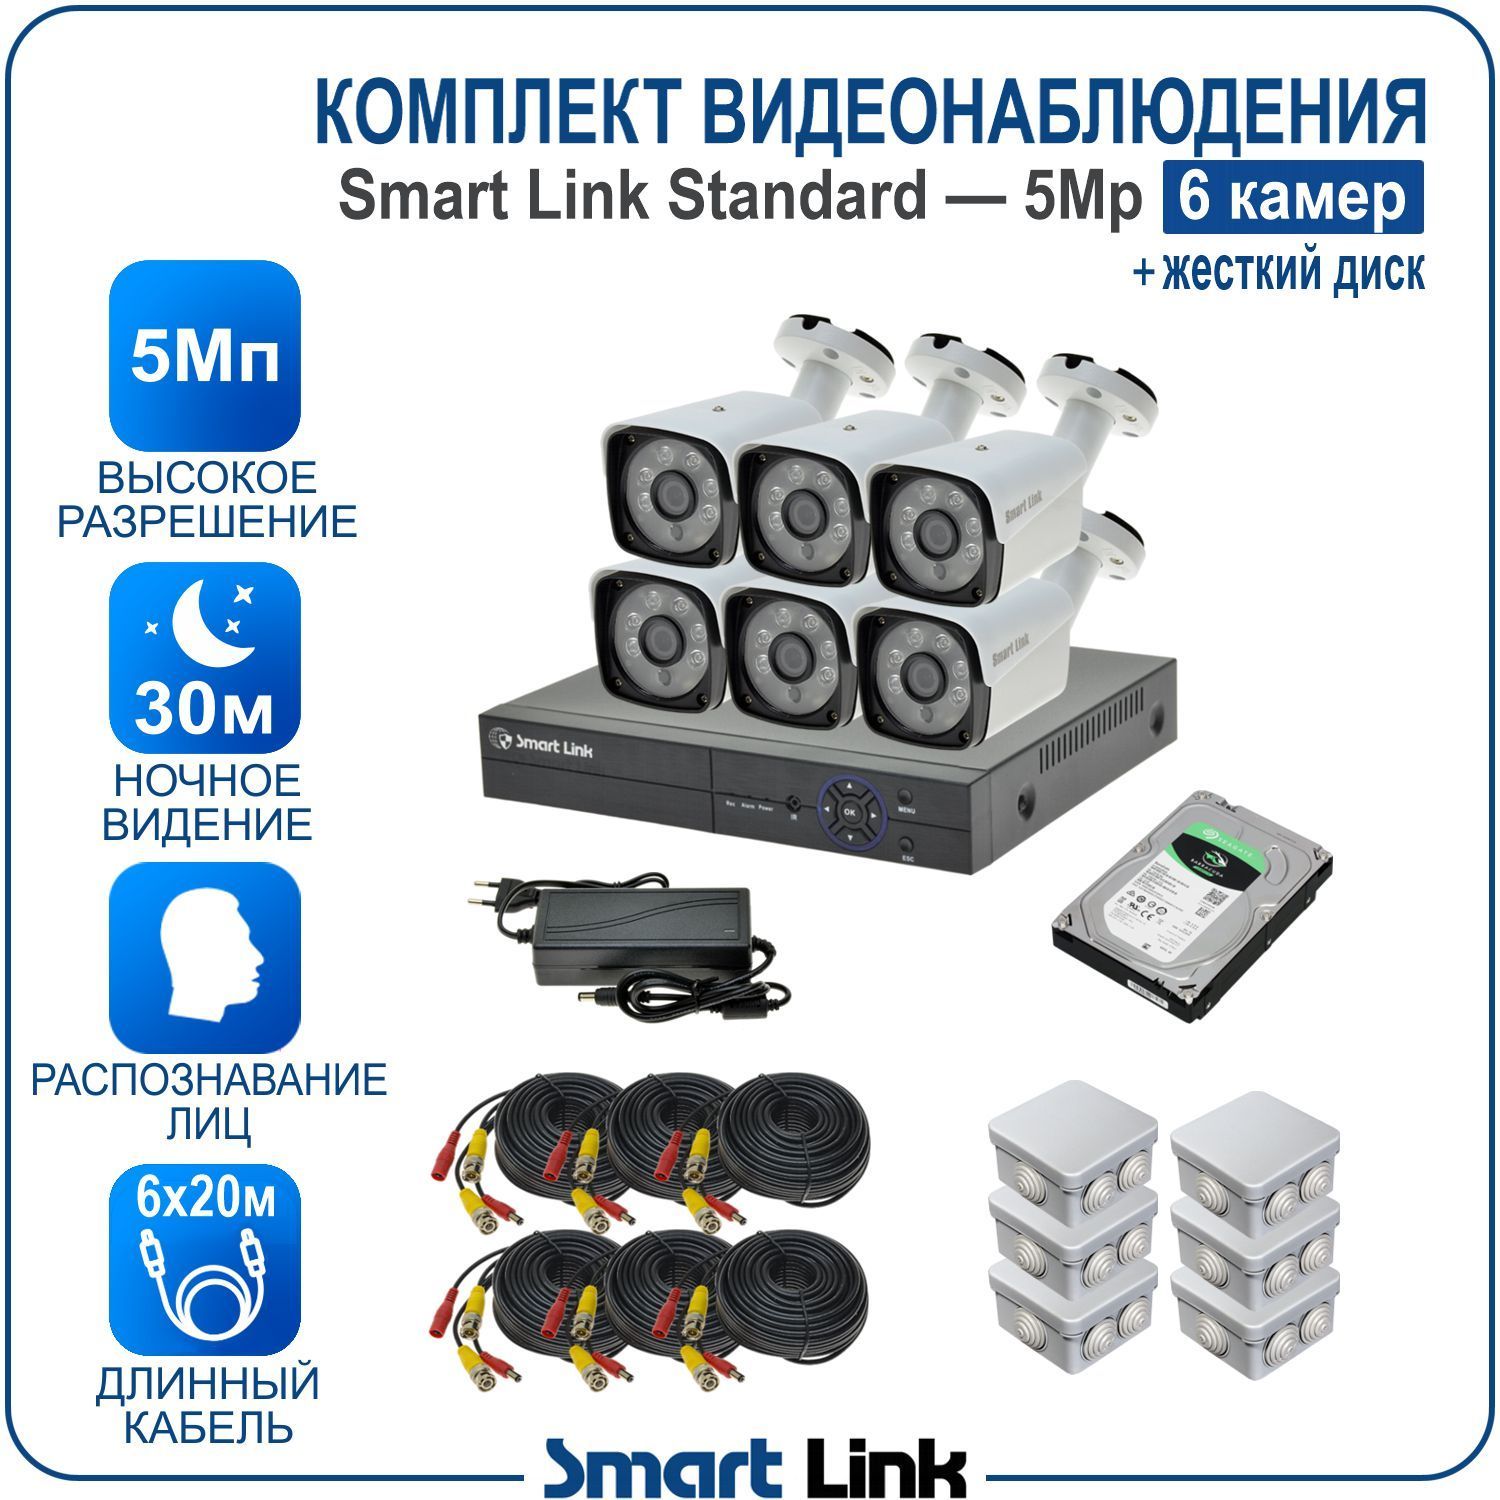 Комплект видеонаблюдения Smart Link SL-5M5N6B-H на 6 уличных 5Мп камер + жесткий диск комплект видеонаблюдения smart link sl 5m5n8b h на 8 уличных 5мп камер жесткий диск